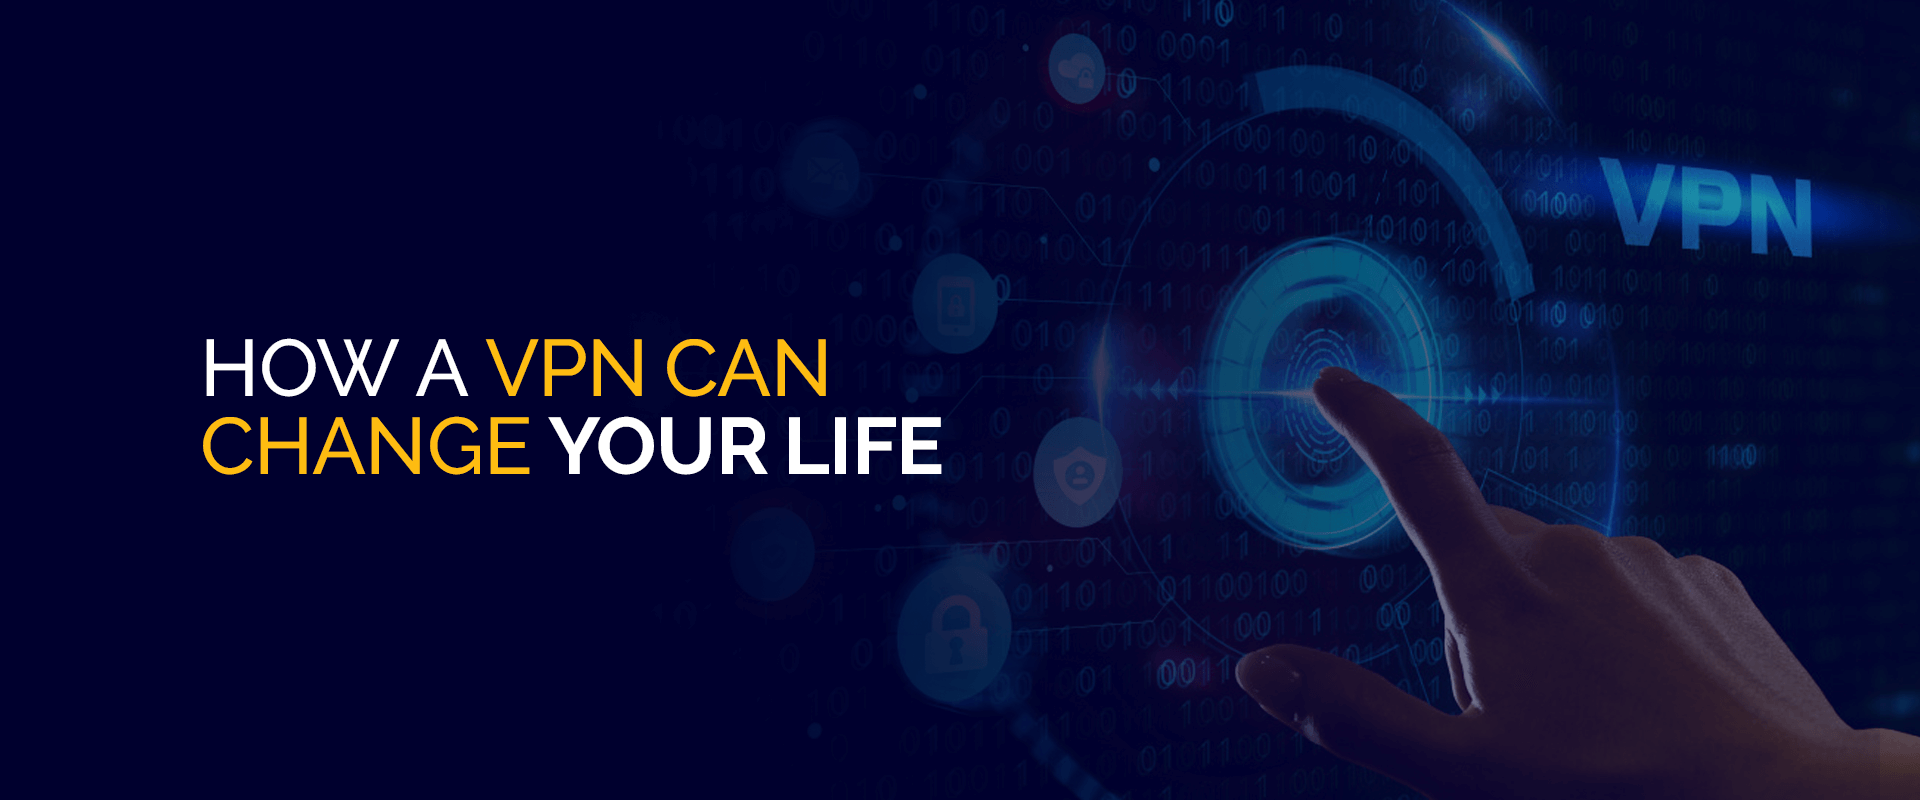 Jak VPN może zmienić Twoje życie